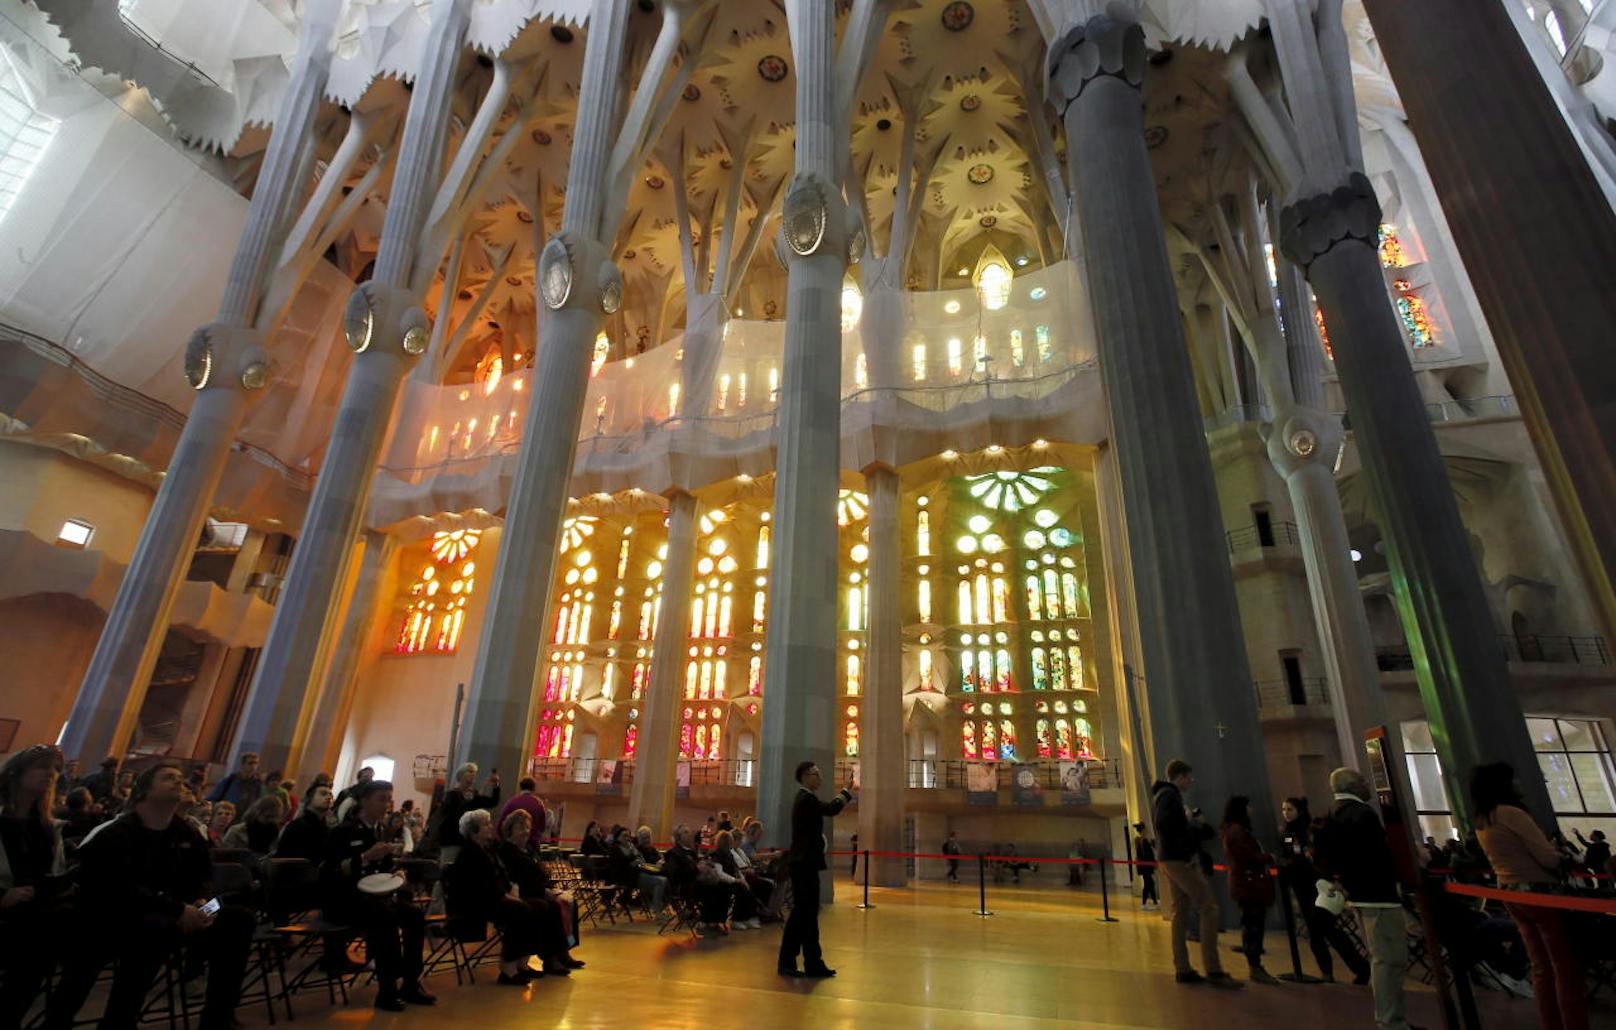 Er wurde 1882 begonnen und soll nach aktueller Planung 2026 zum 100. Todestag von Antoni Gaudí fertiggestellt sein.